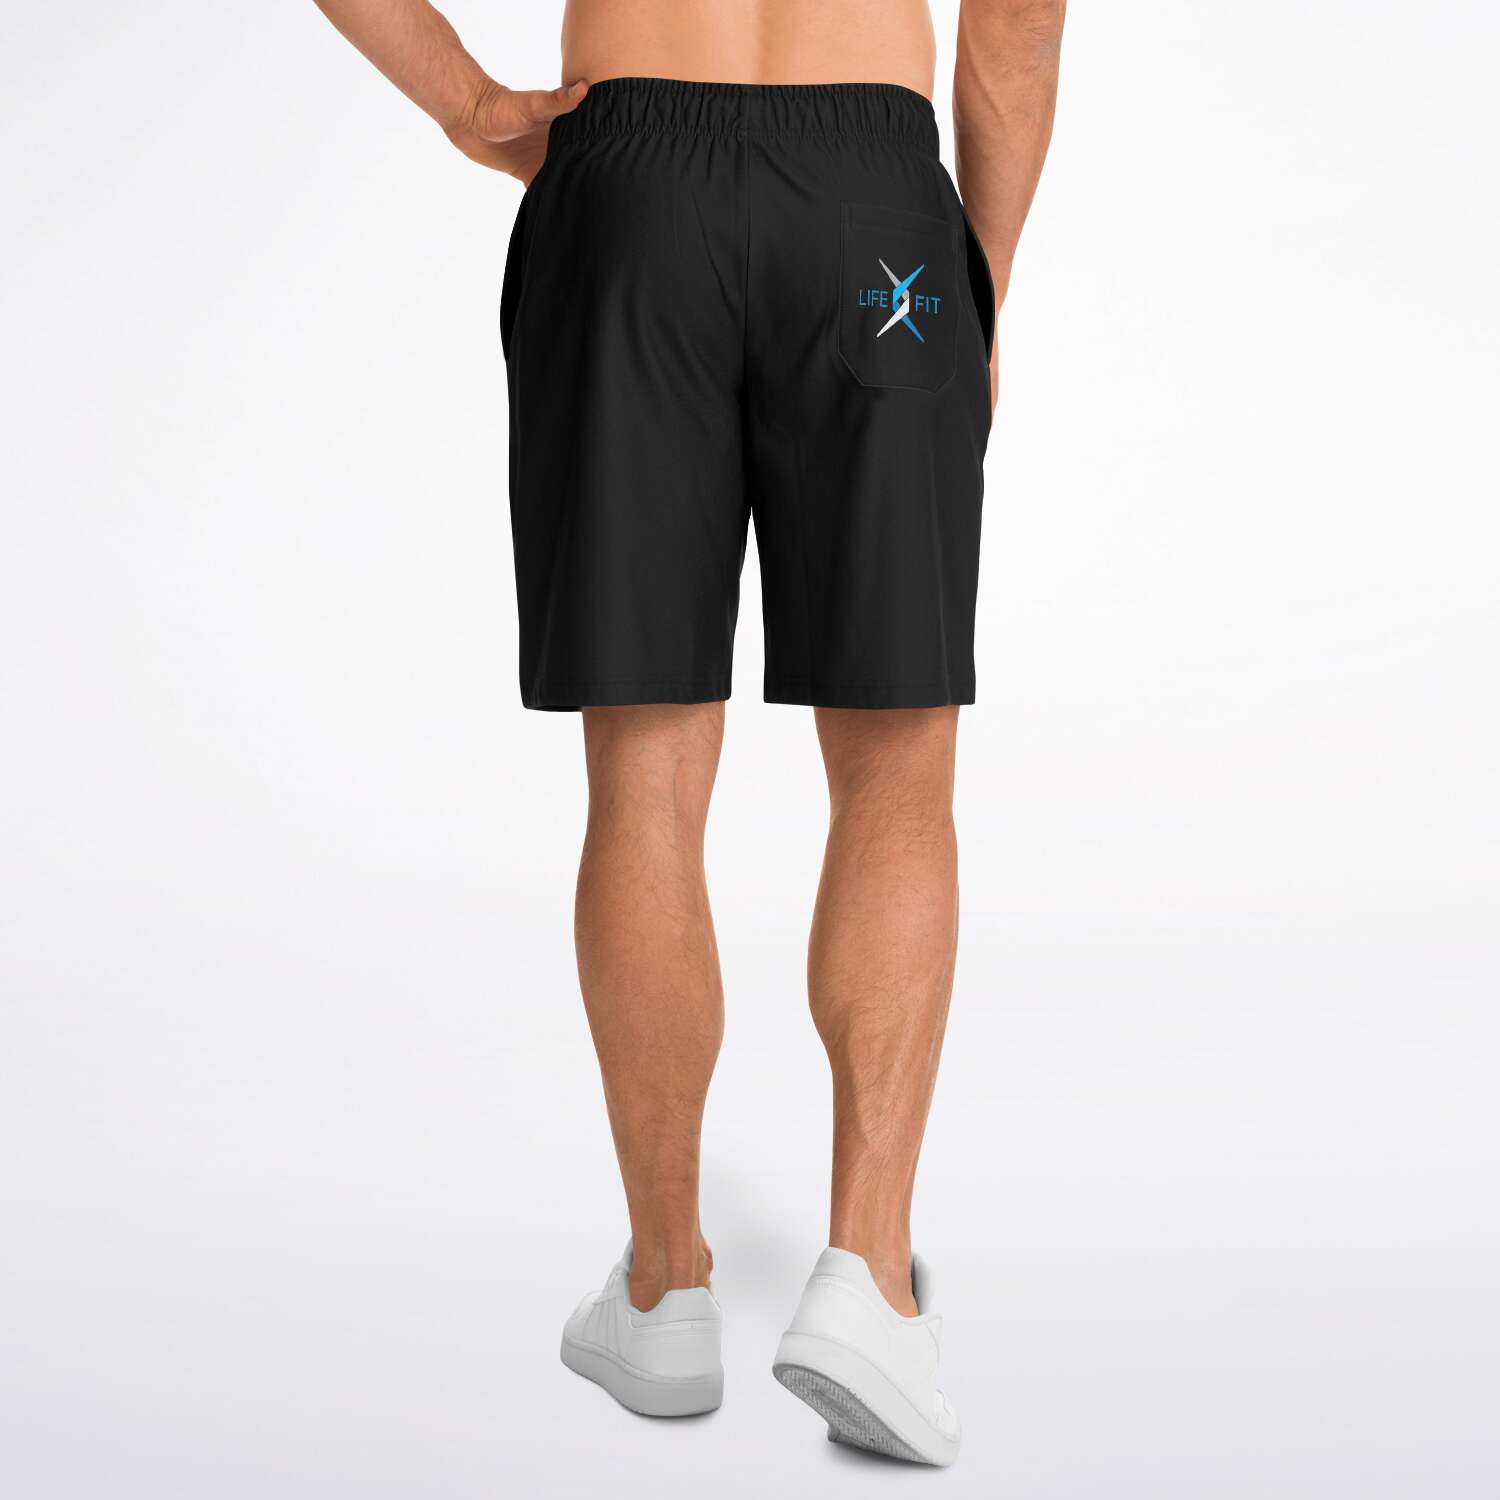 lifefit shorts